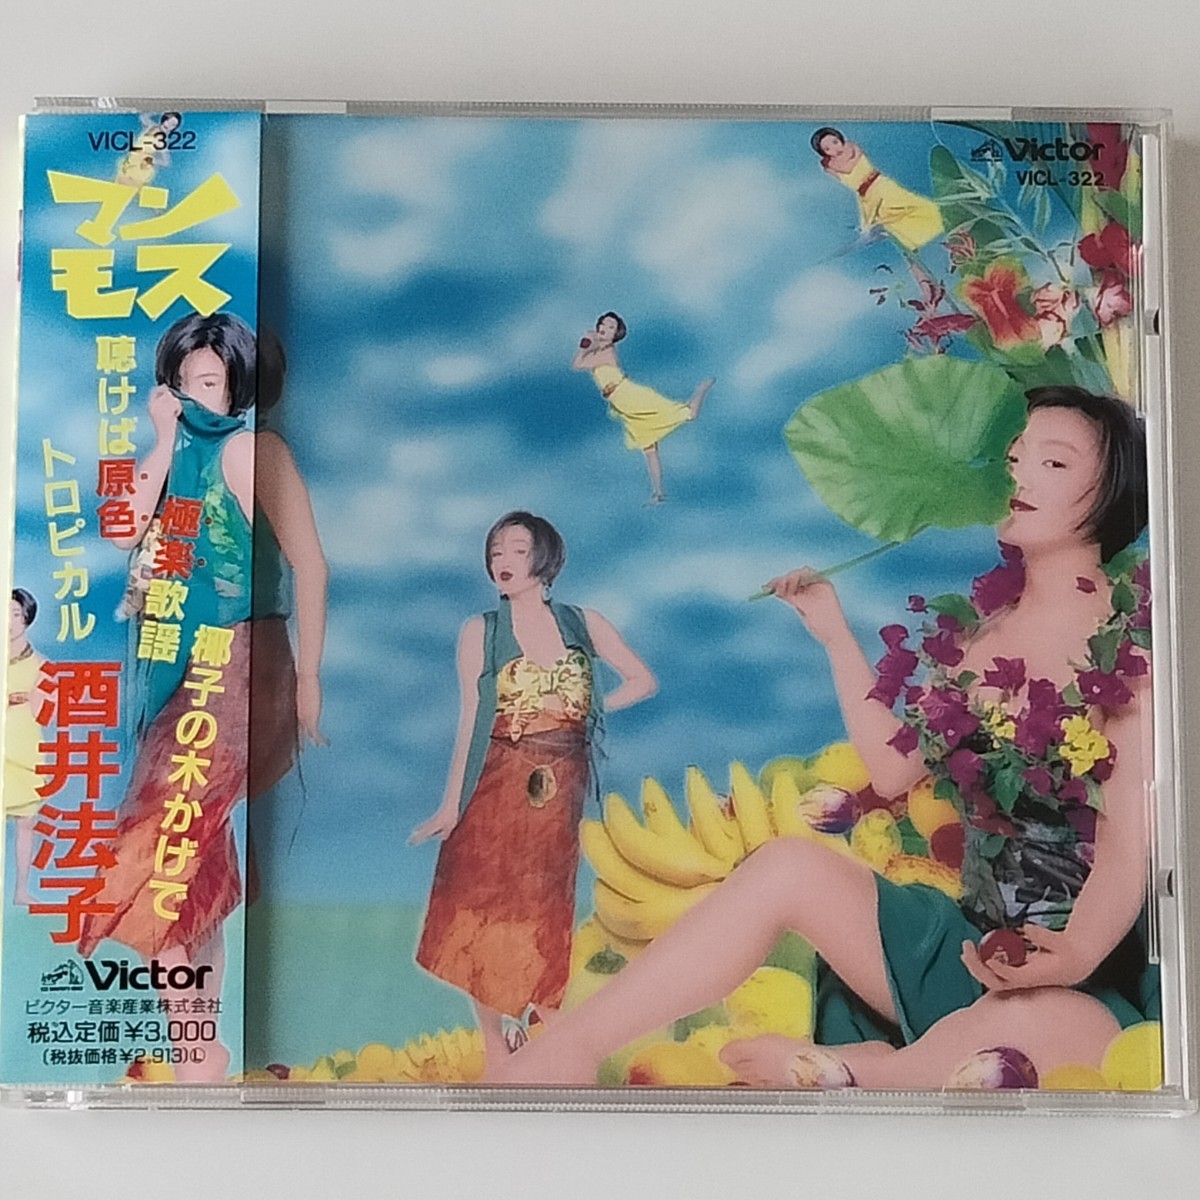 【帯付CD】酒井法子 / マンモス (VICL-322) 1992年アルバム NORIKO SAKAI のりピー さいとうみわこ_画像1